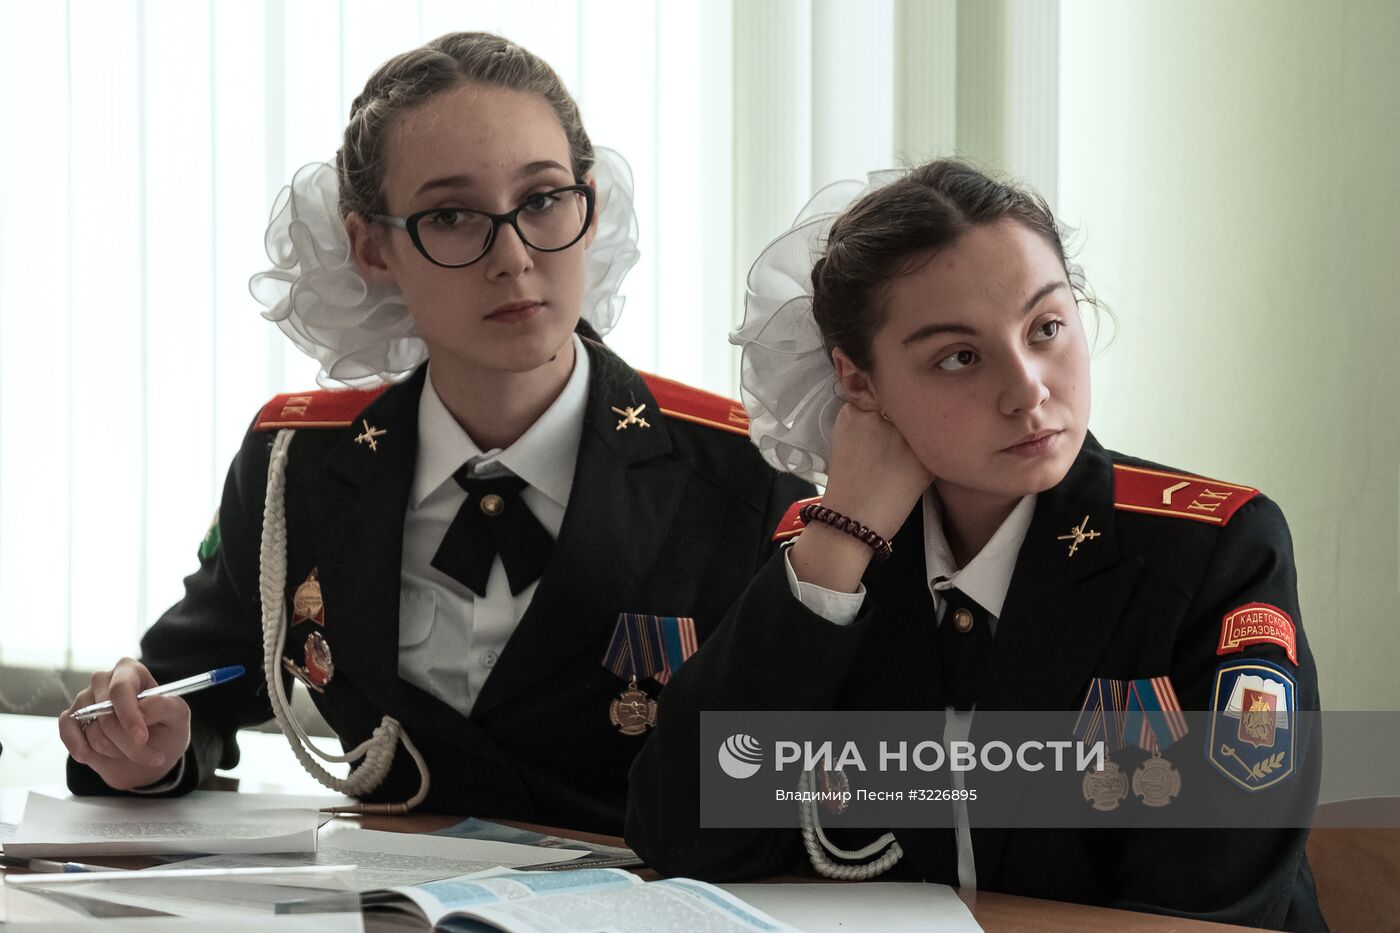 Кадетский класс в московской школе